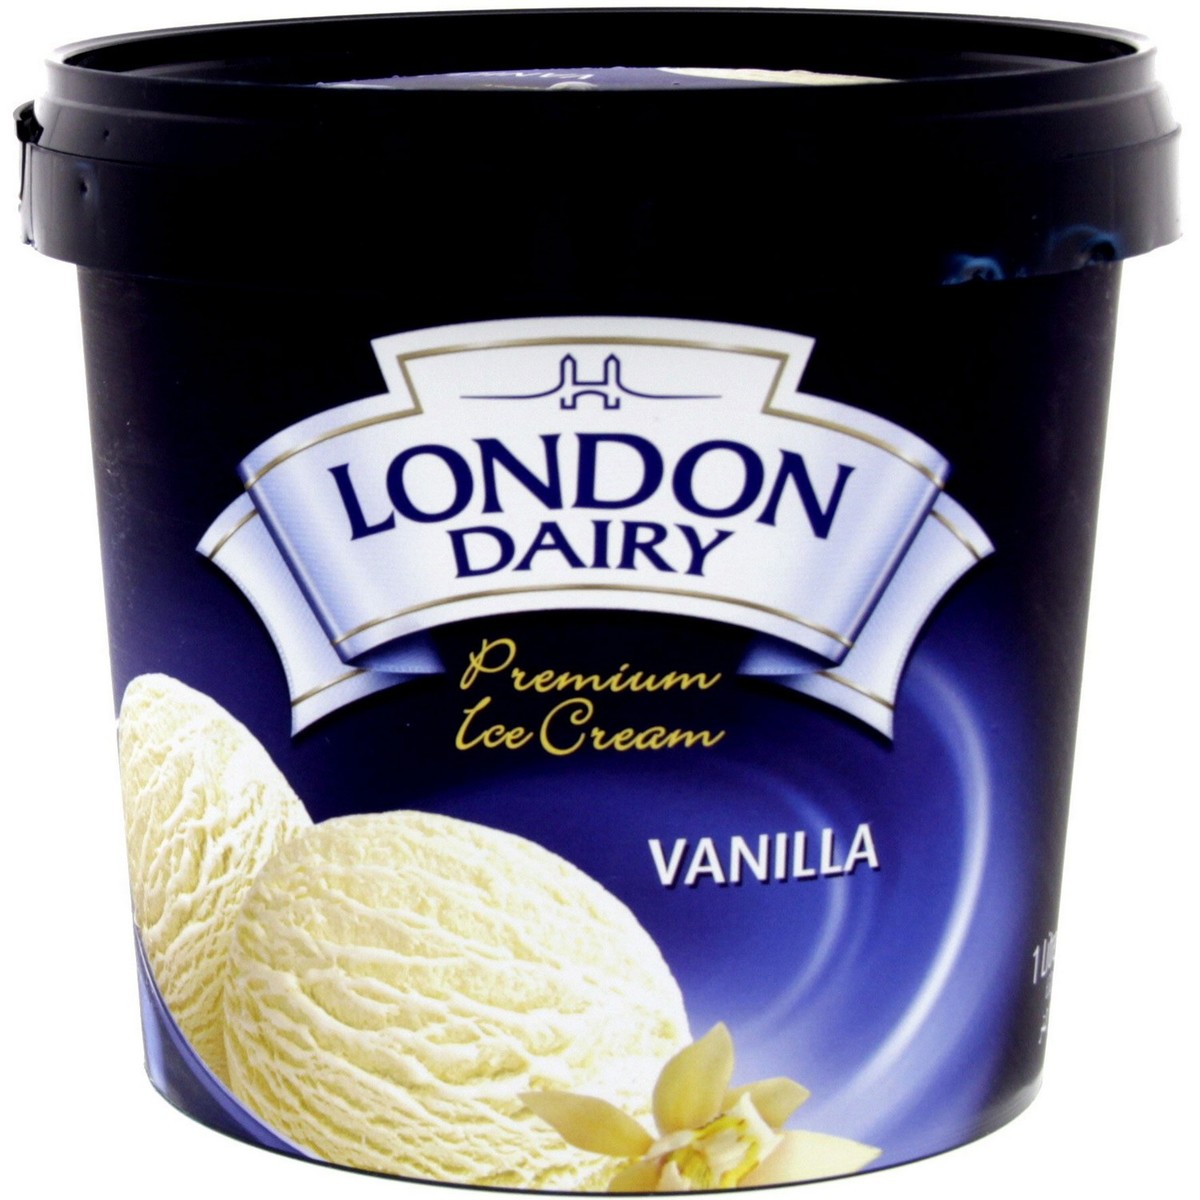 اشتري قم بشراء لندن ديري ايس كريم فانيليا 1 لتر Online at Best Price من الموقع - من لولو هايبر ماركت Ice Cream Take Home في السعودية